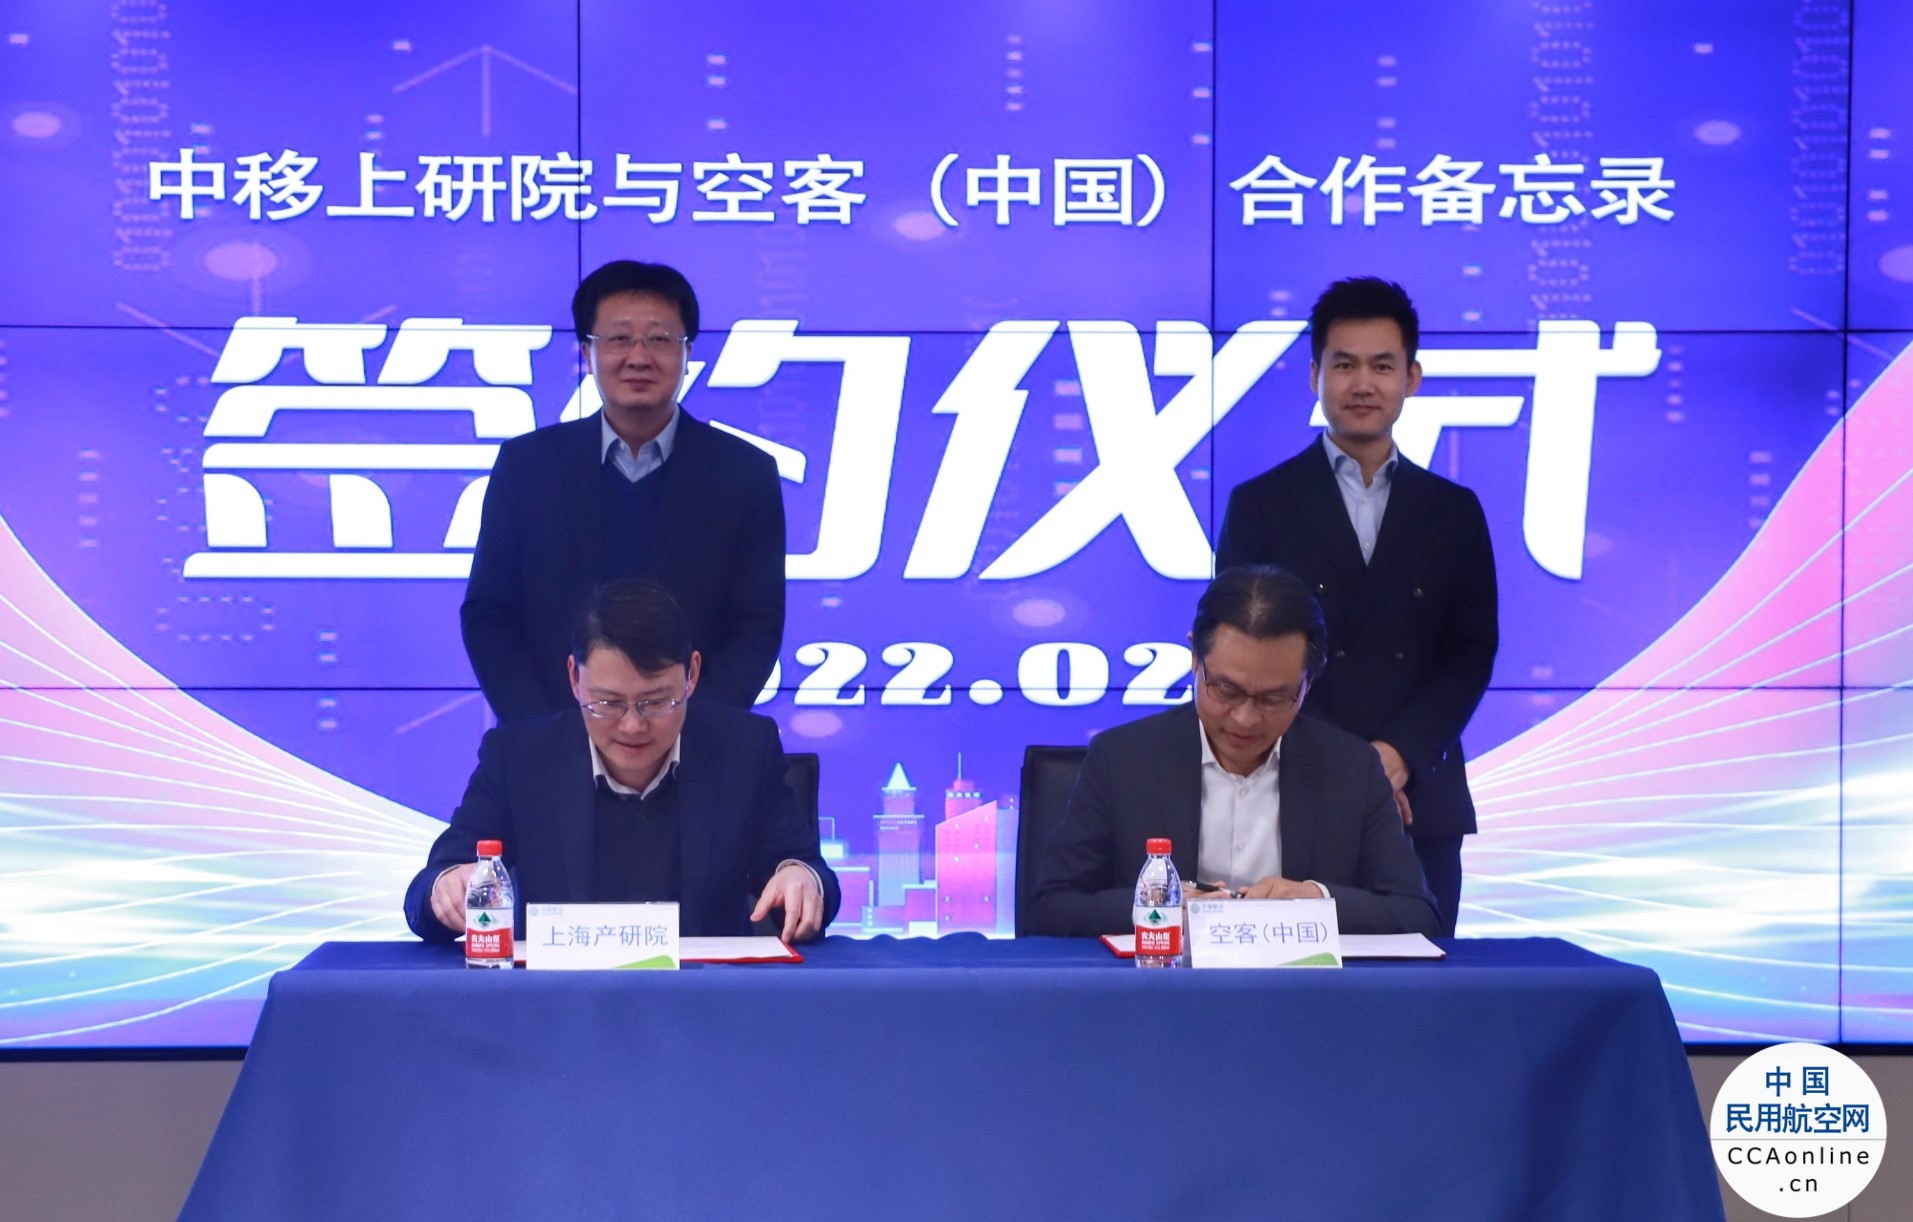 空中客车与中国移动上海产业研究院联手在中国开展5G空地宽带互联产业化和试点阶段项目